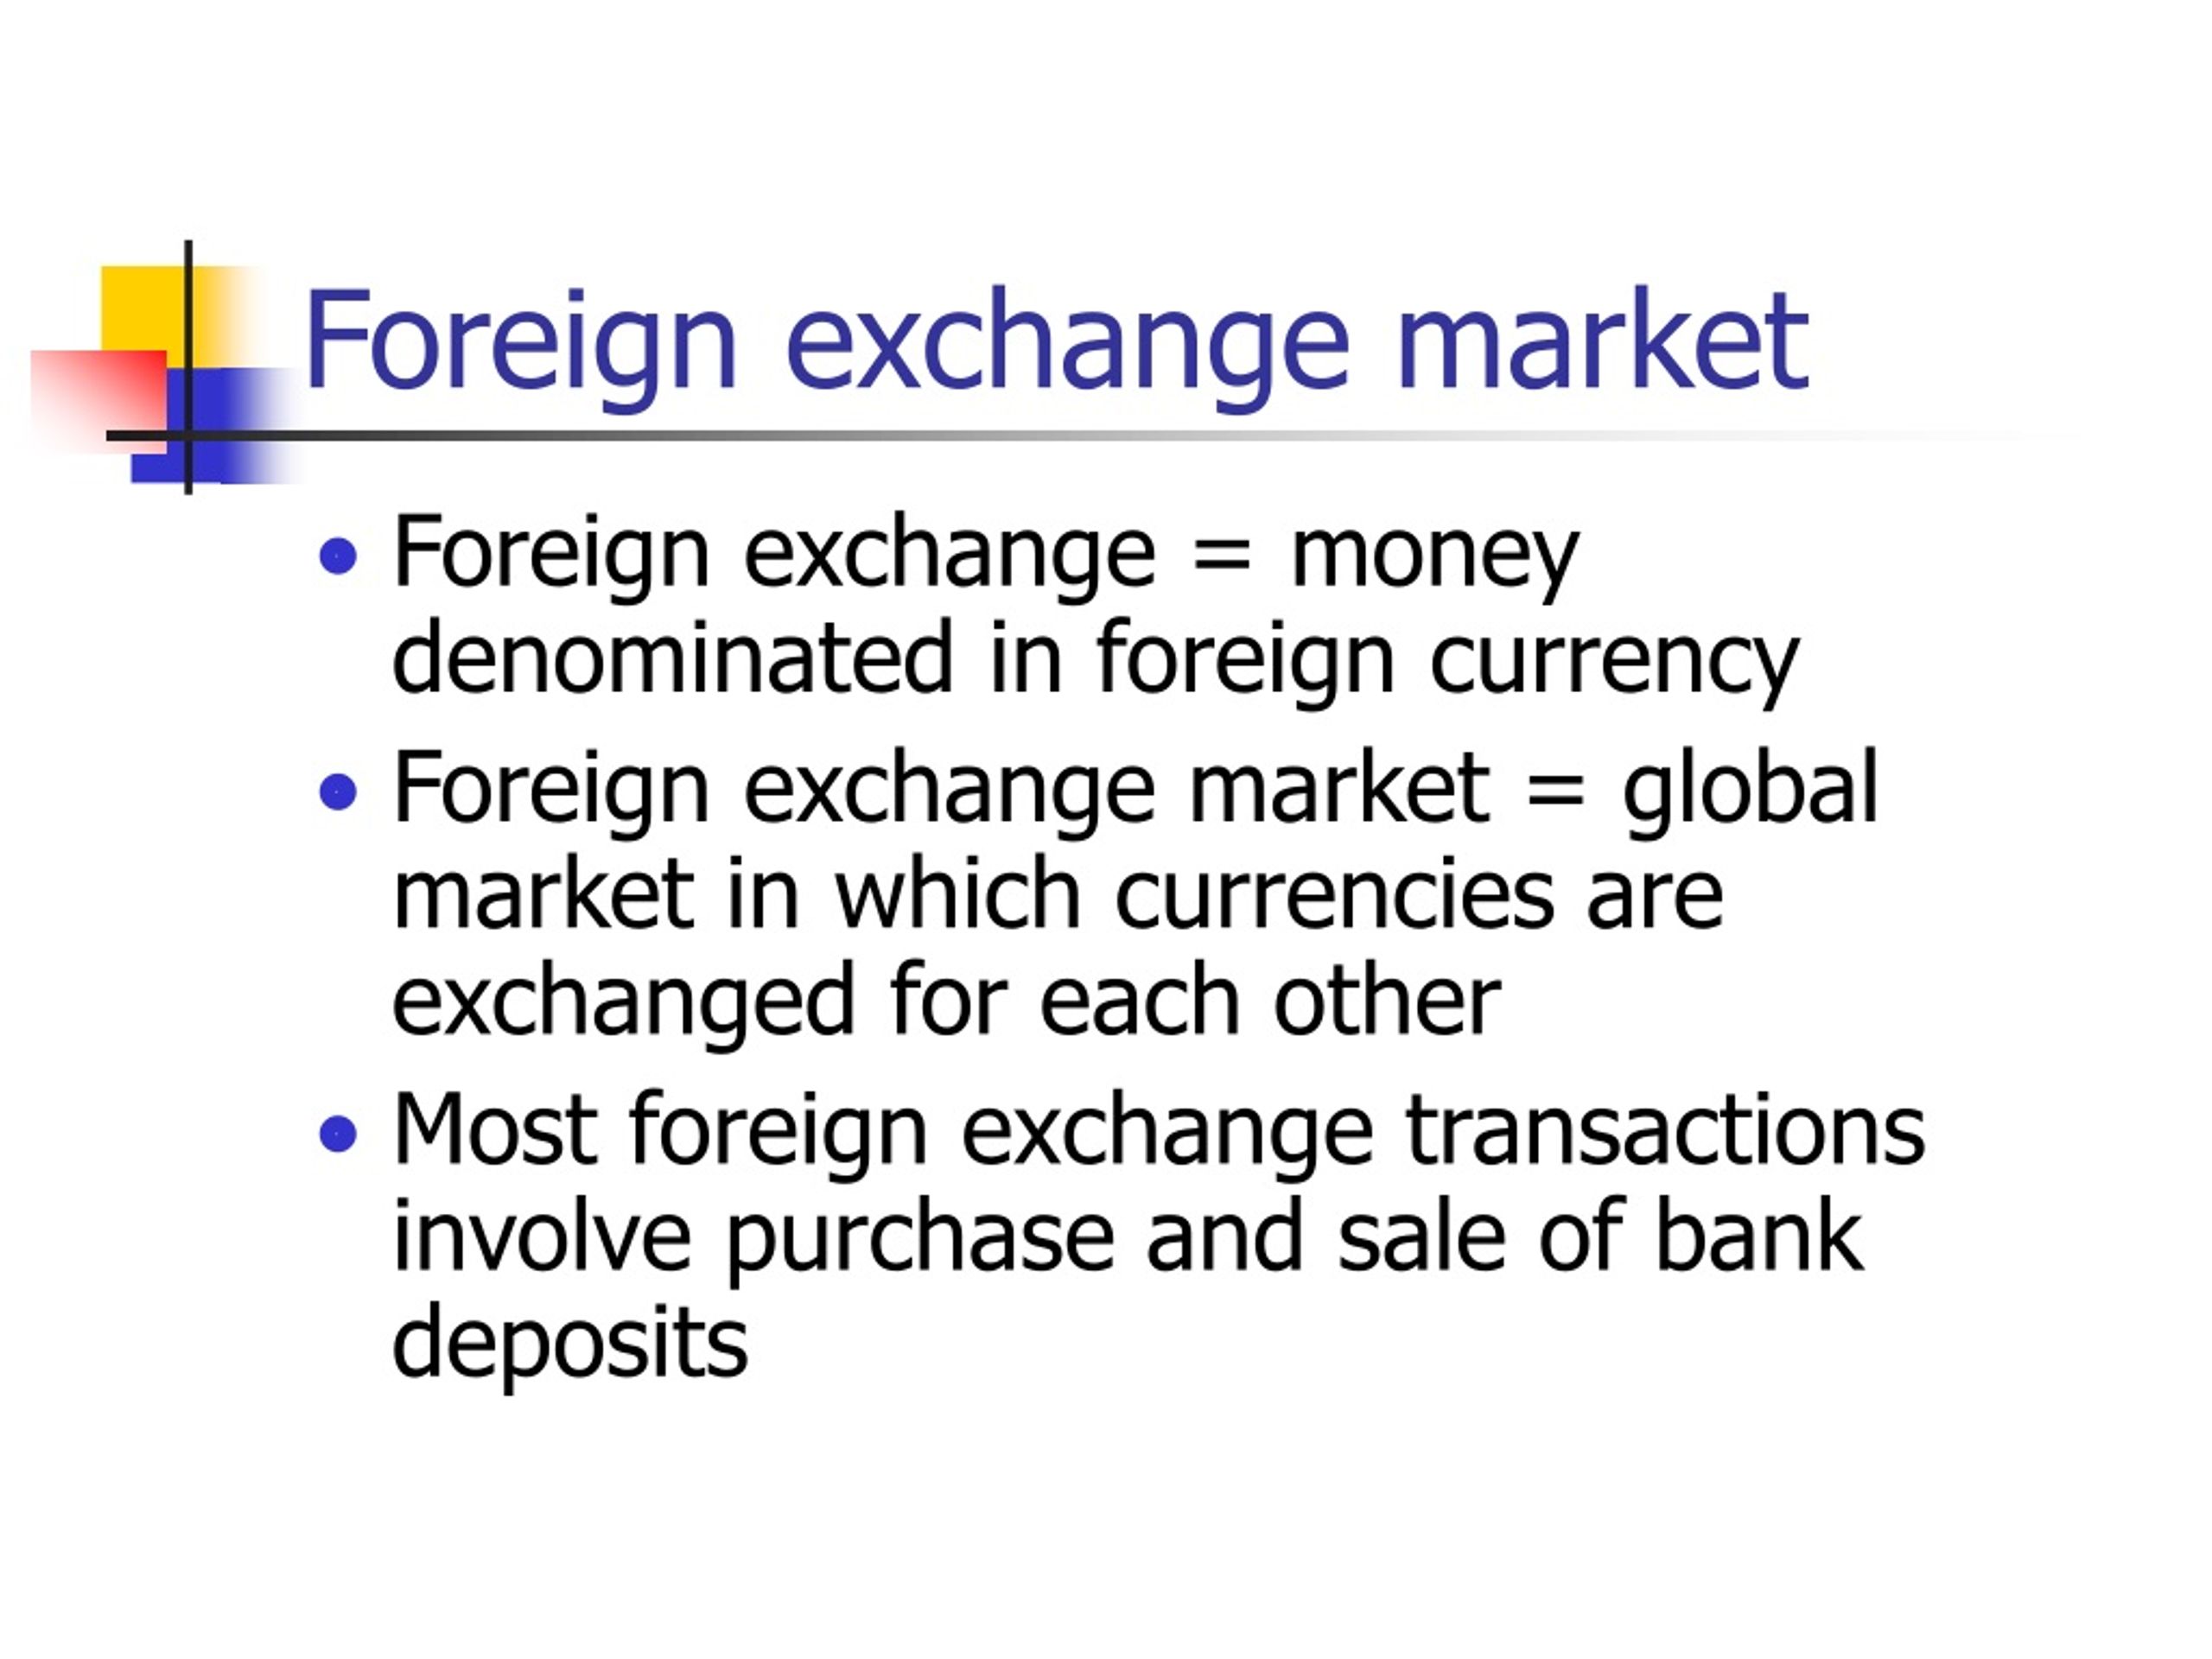 foreign exchange market essay grade 12